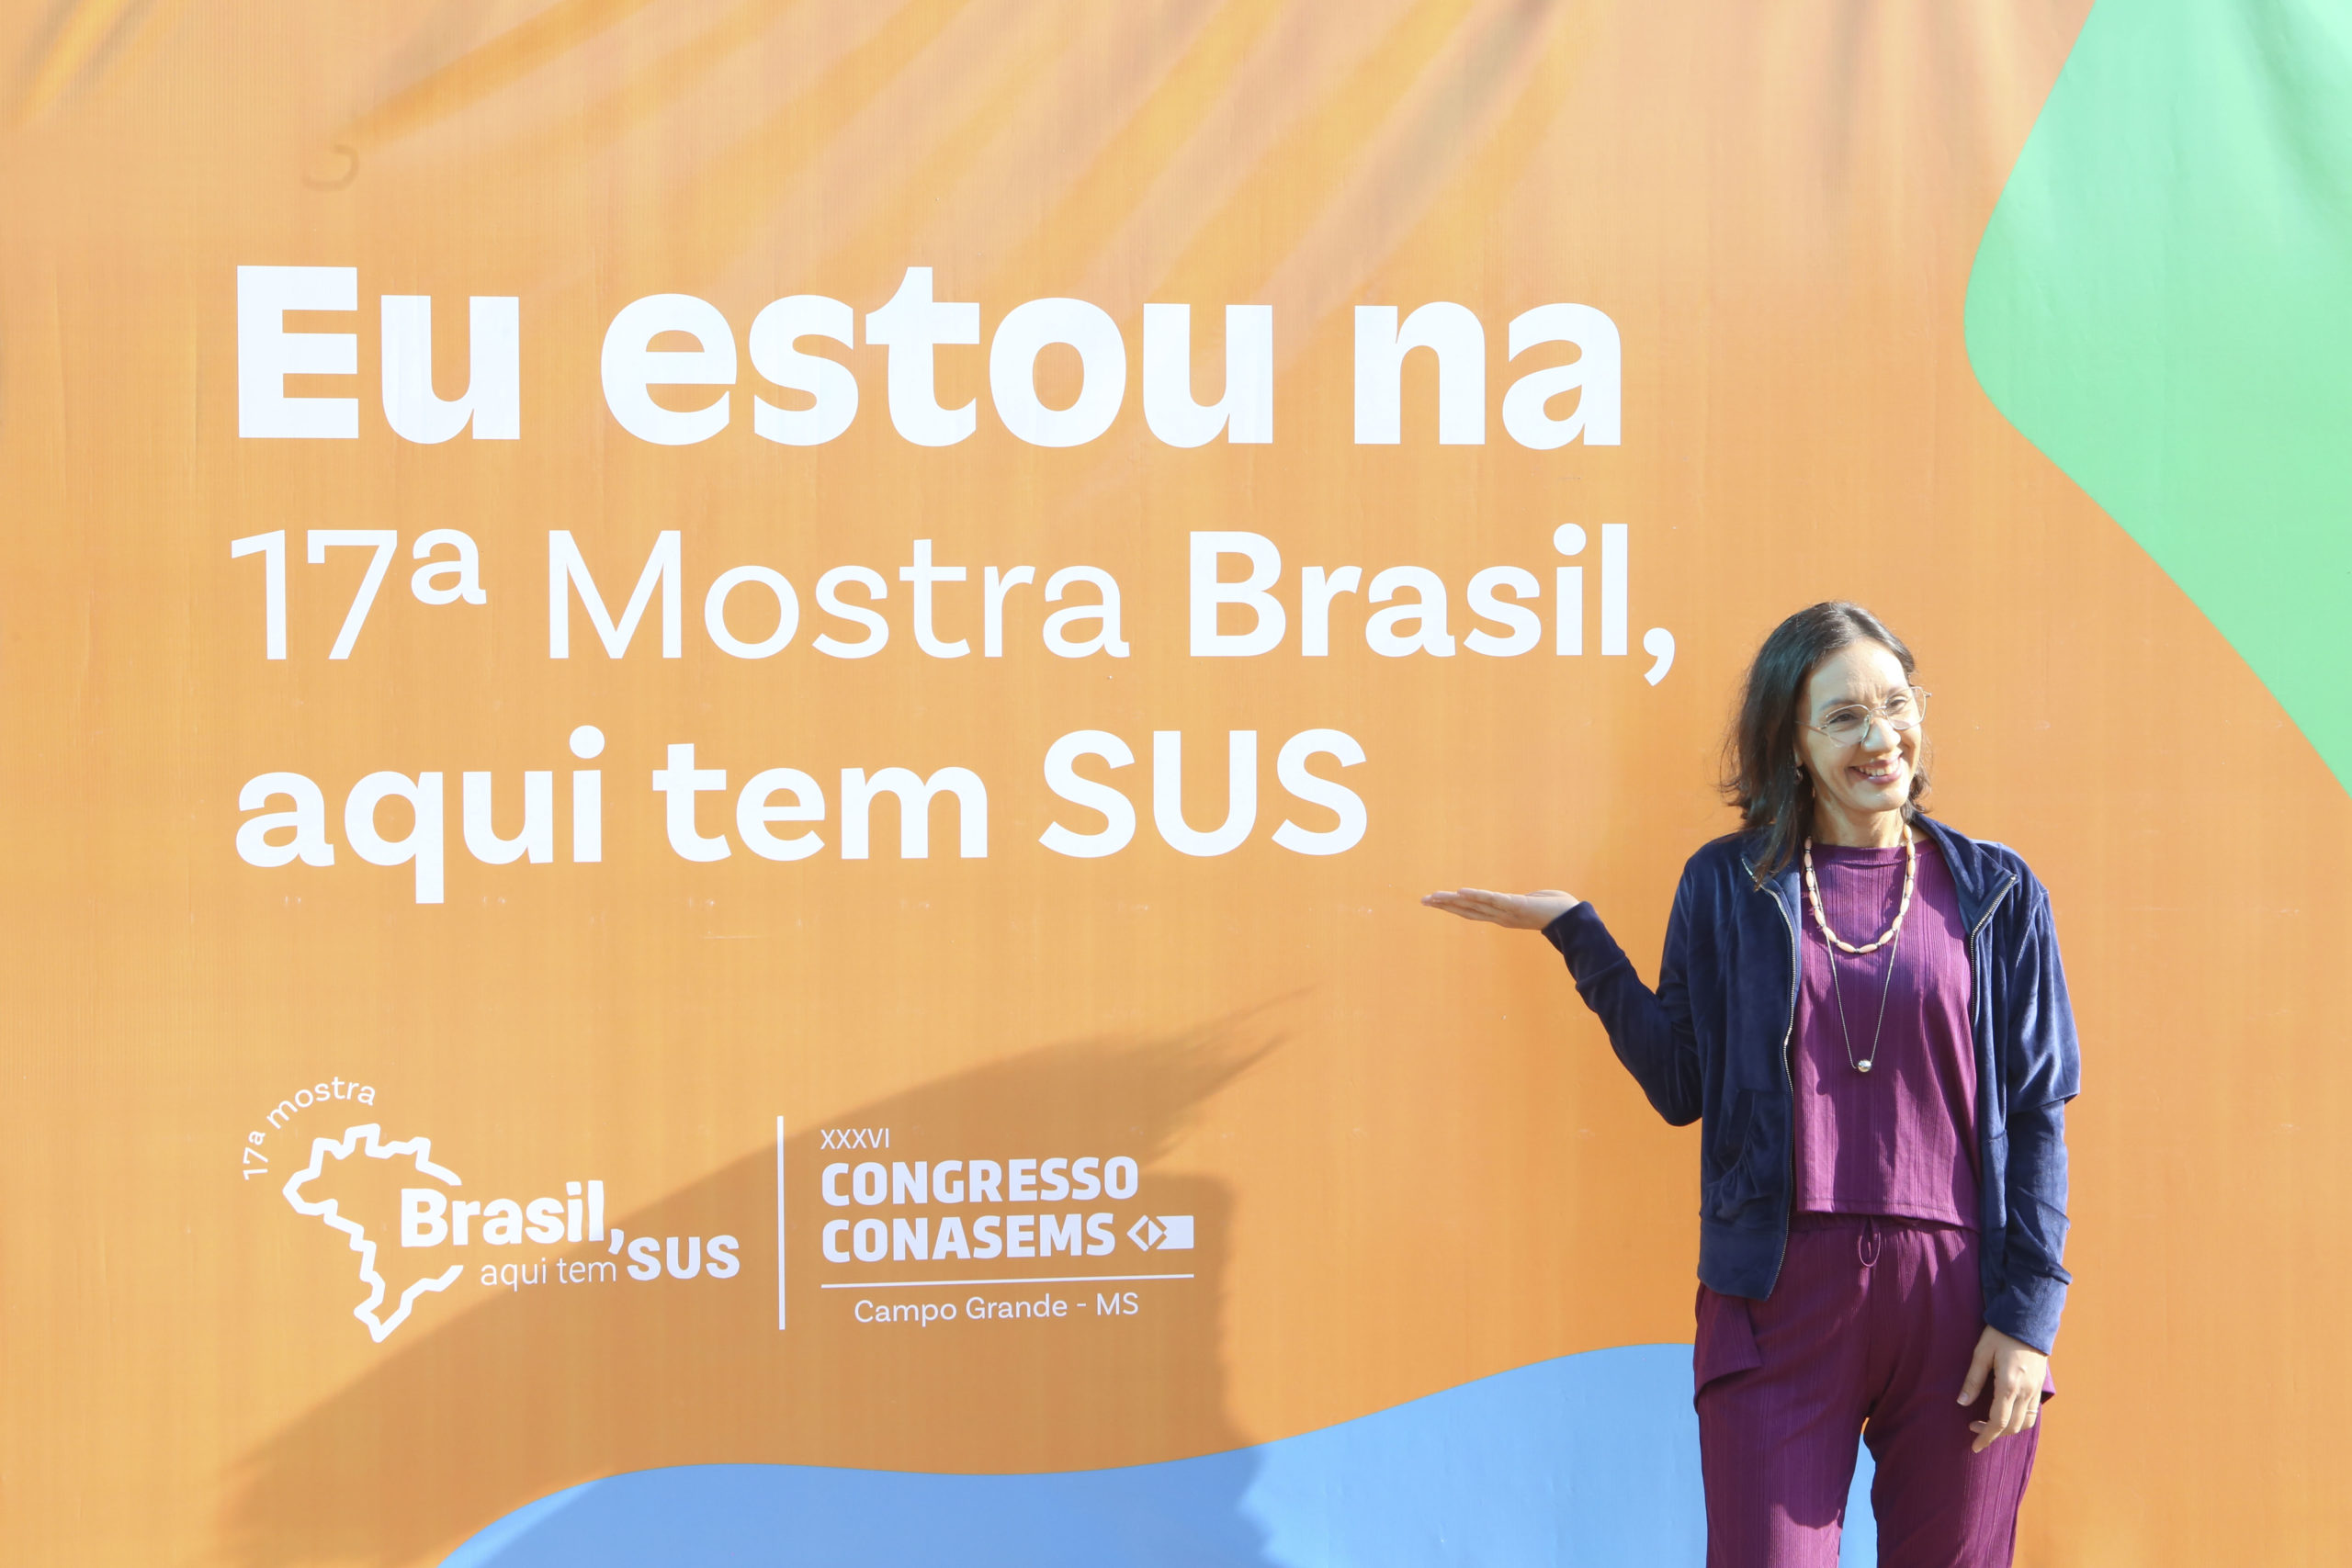 XXXVI CONGRESSO NACIONAL DO CONASEMS – 17ª Mostra “Brasil, aqui tem SUS”